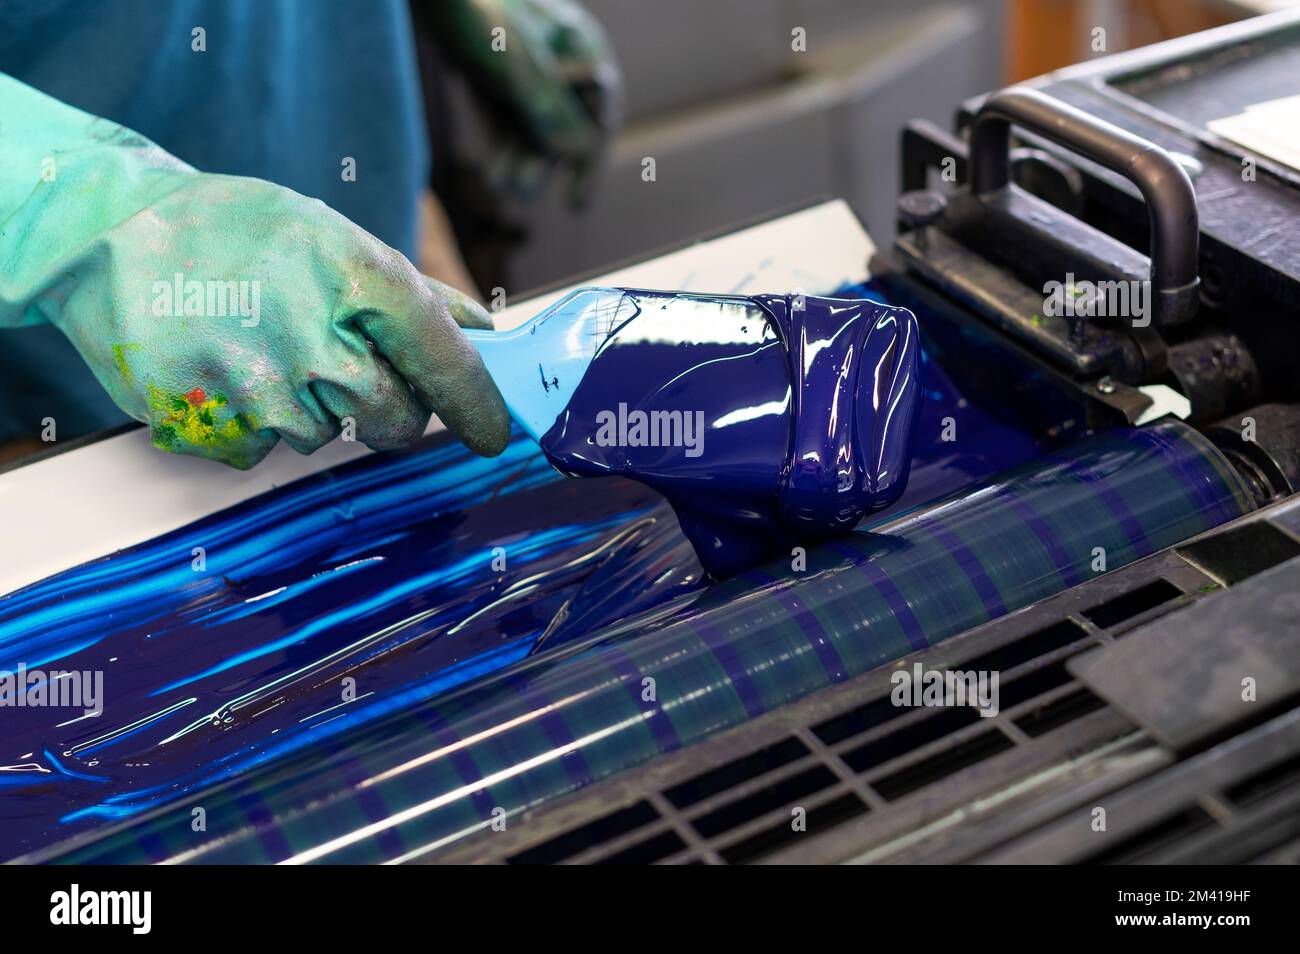 Par dessus l'employé anonyme dans des gants en caoutchouc sale étalant l'encre bleue sur les rouleaux de l'imprimante offset industrielle pendant le travail dans l'atelier de typographie Banque D'Images